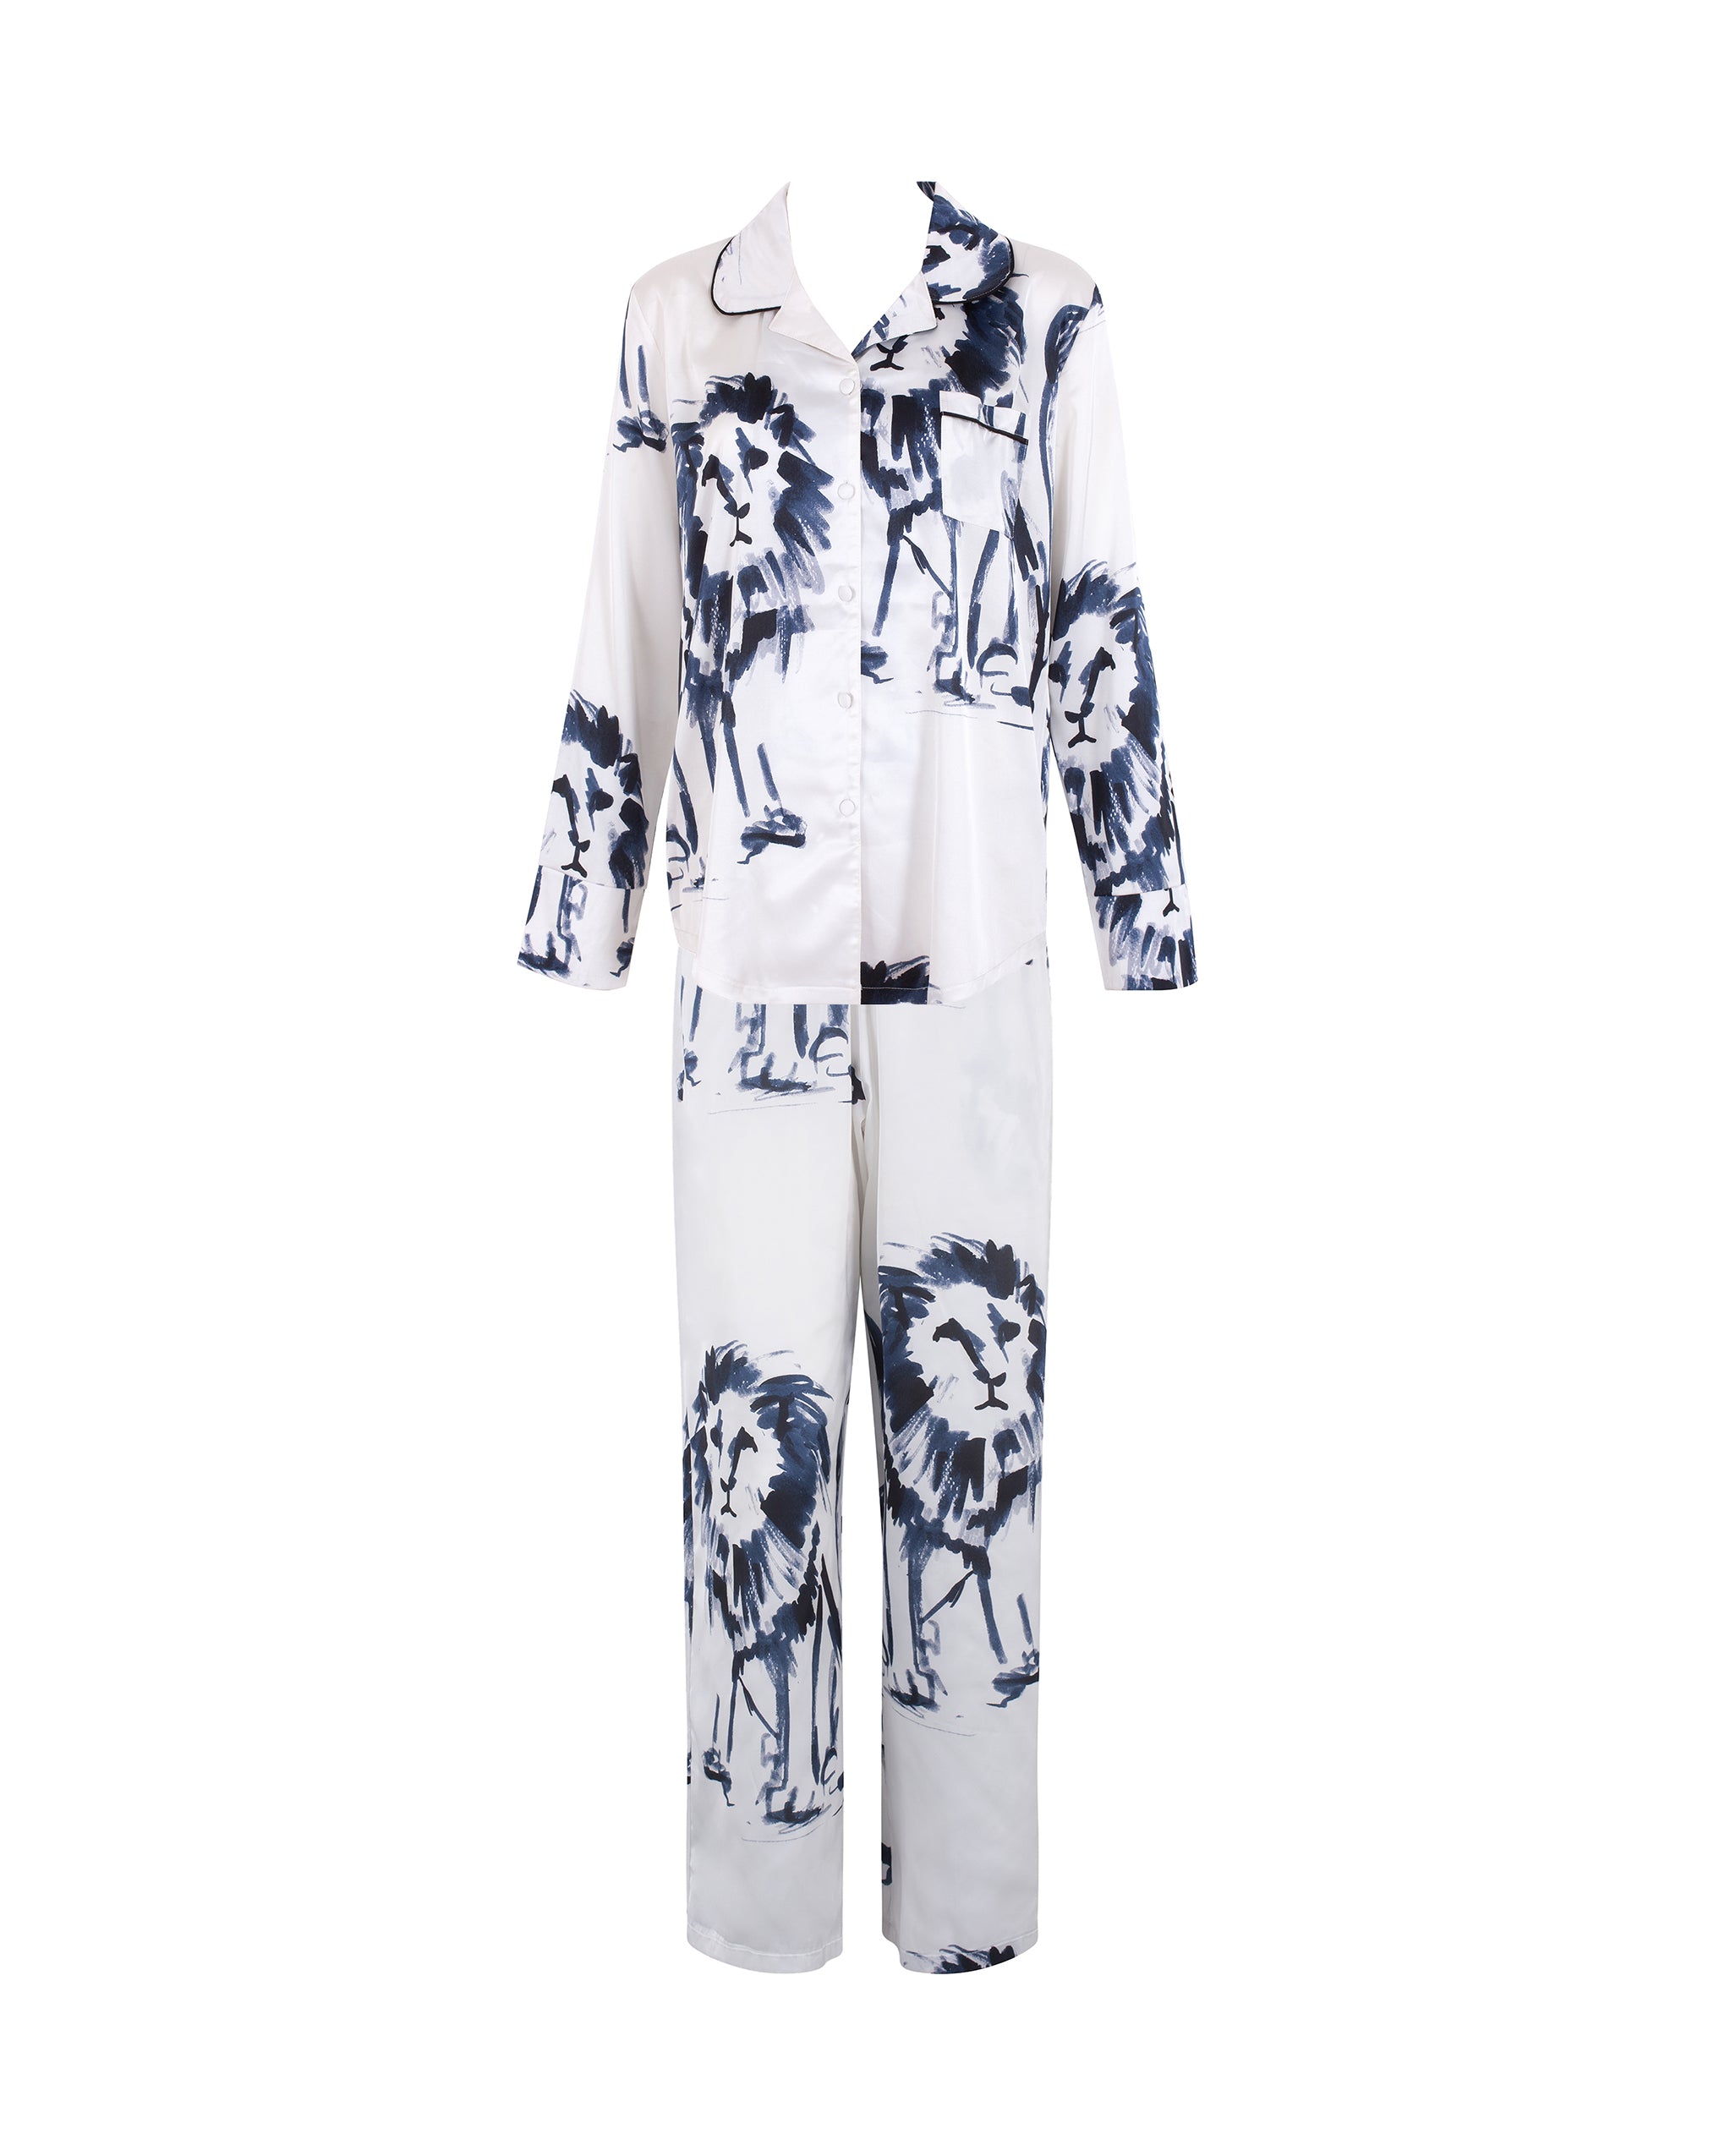 Bluebella Olin Luxury Satin Long Pyjama Set White/Black